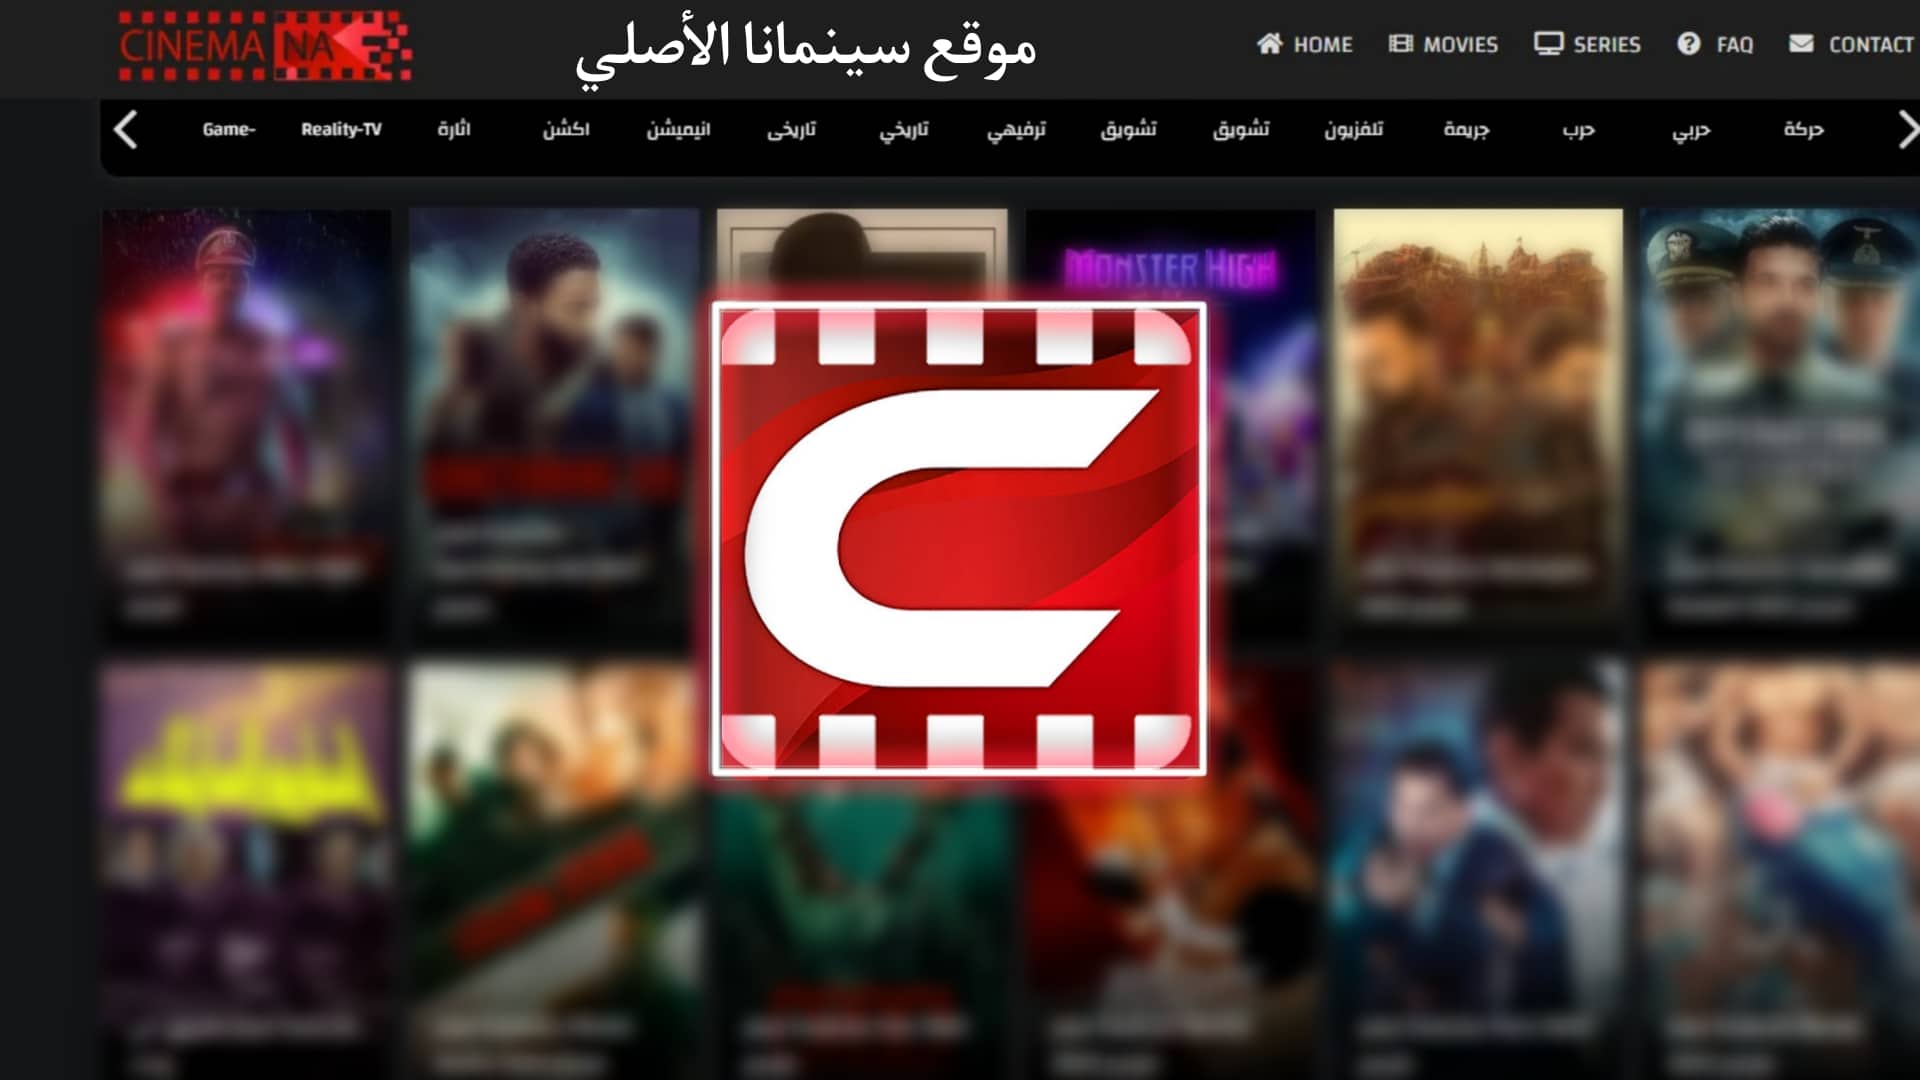 موقع سينمانا شبكتي الاصلي Shabakaty لمشاهدة الافلام والمسلسلات